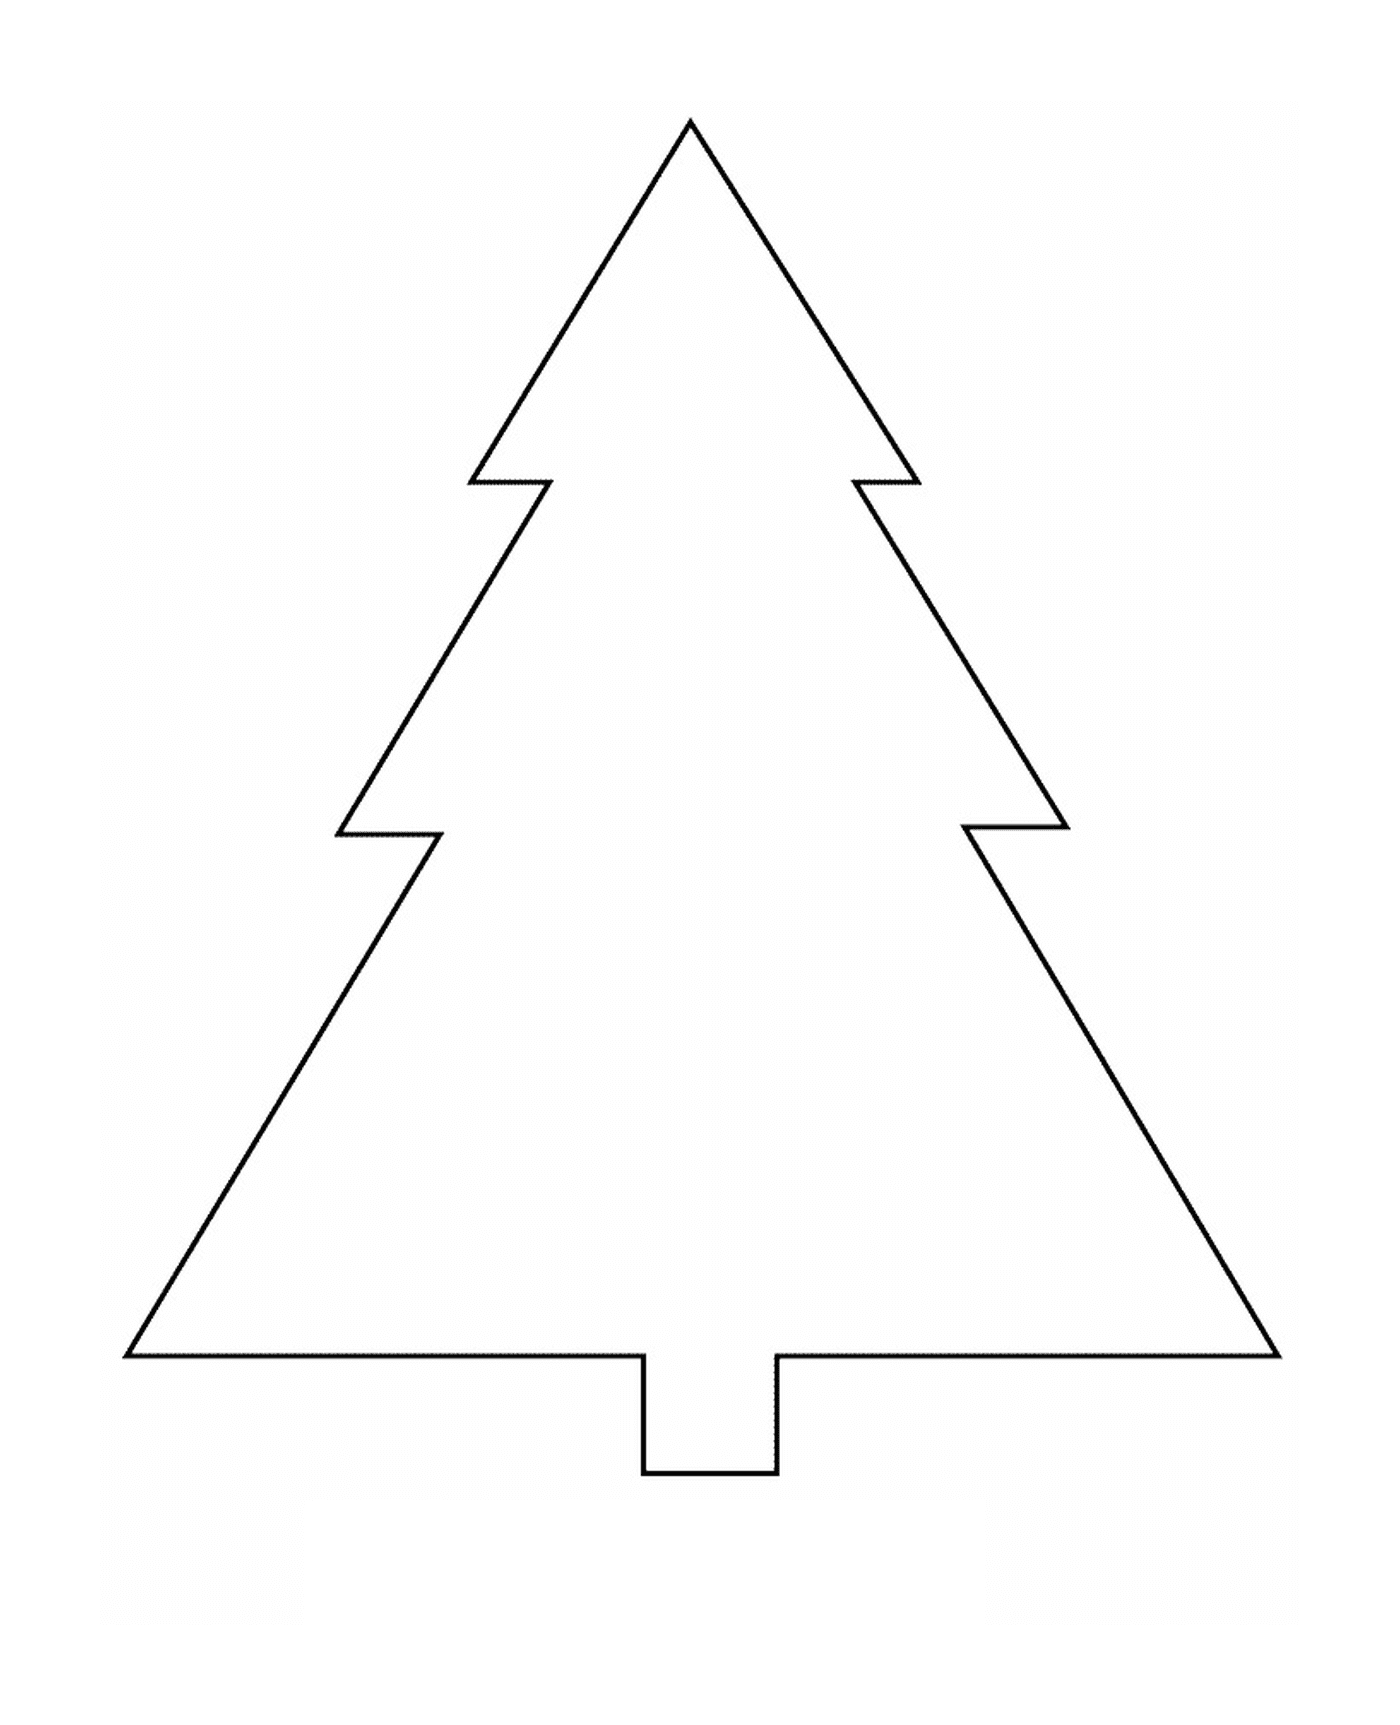  एक क्रिसमस का पेड़ जो कागज़ों को काटता है 